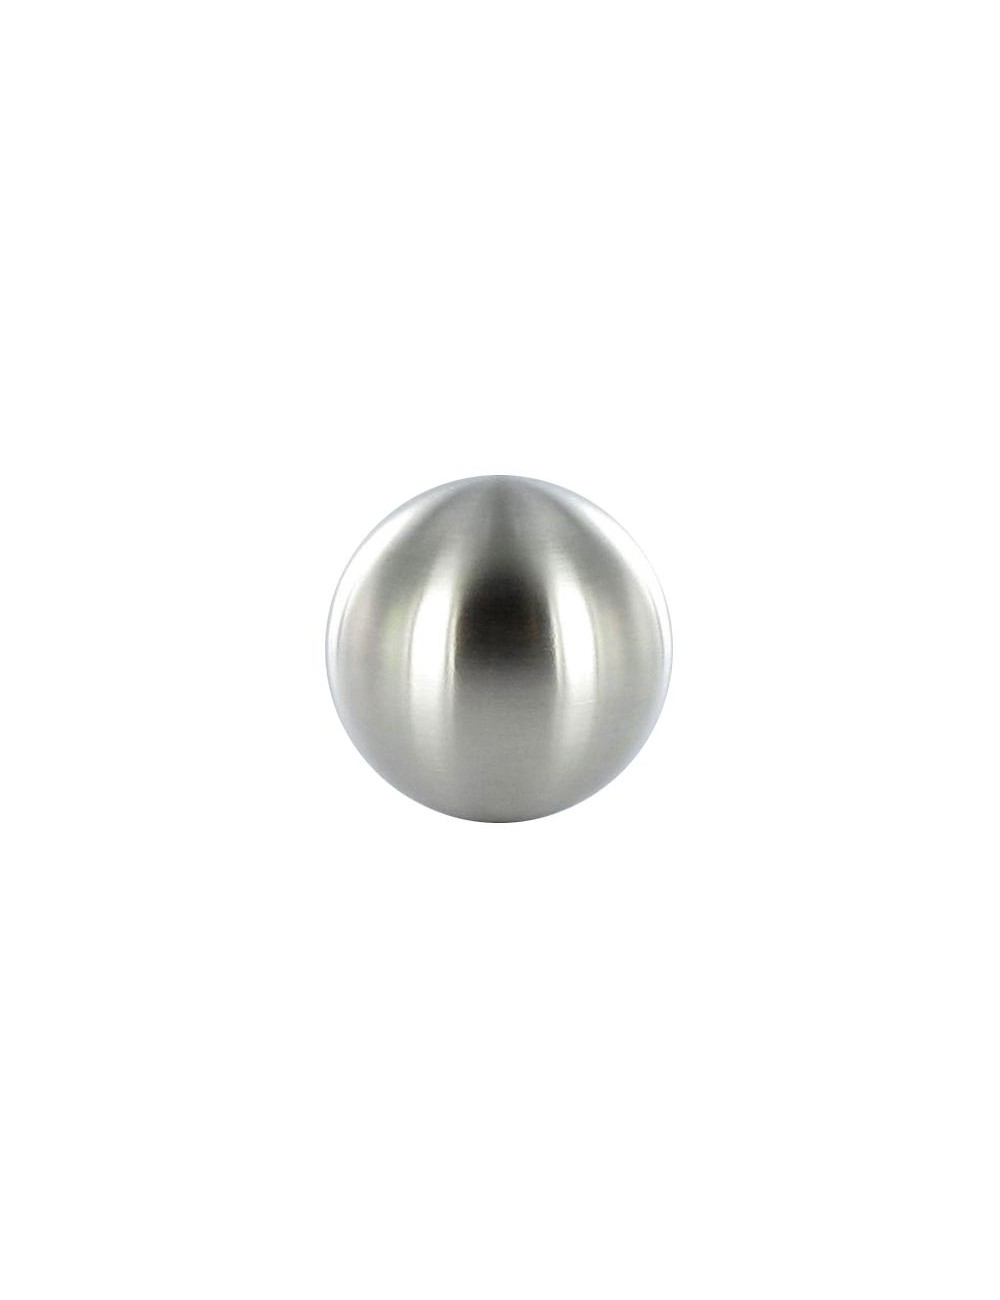 100 Niro Acciaio in Acciaio Inox a sfere a sfere SFERA 8mm 8 mm 